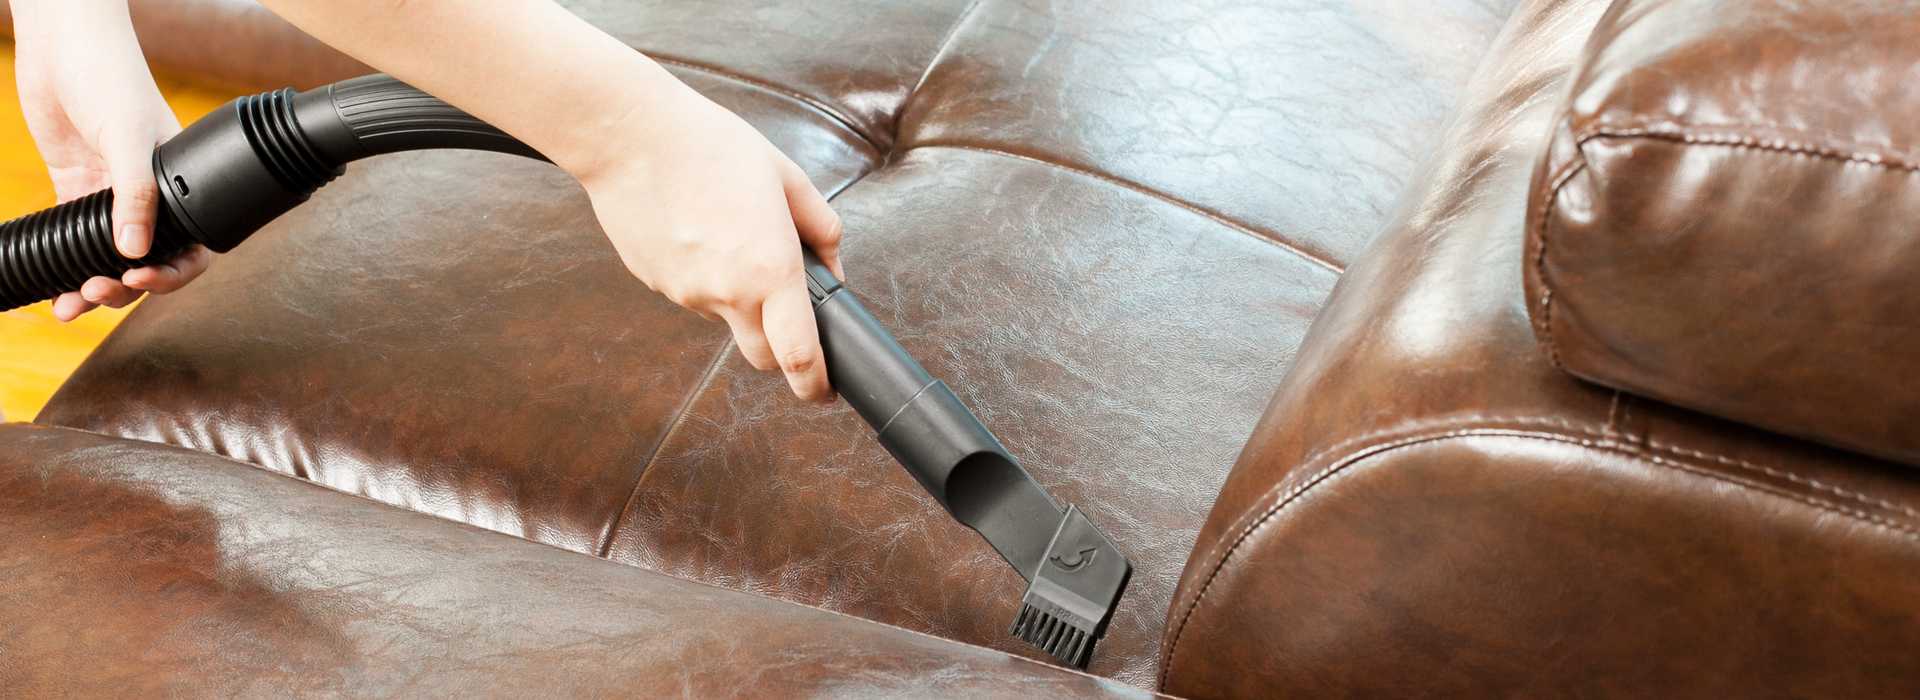 Топ-10 способов, как убрать запах и пятна мочи взрослого человека с дивана